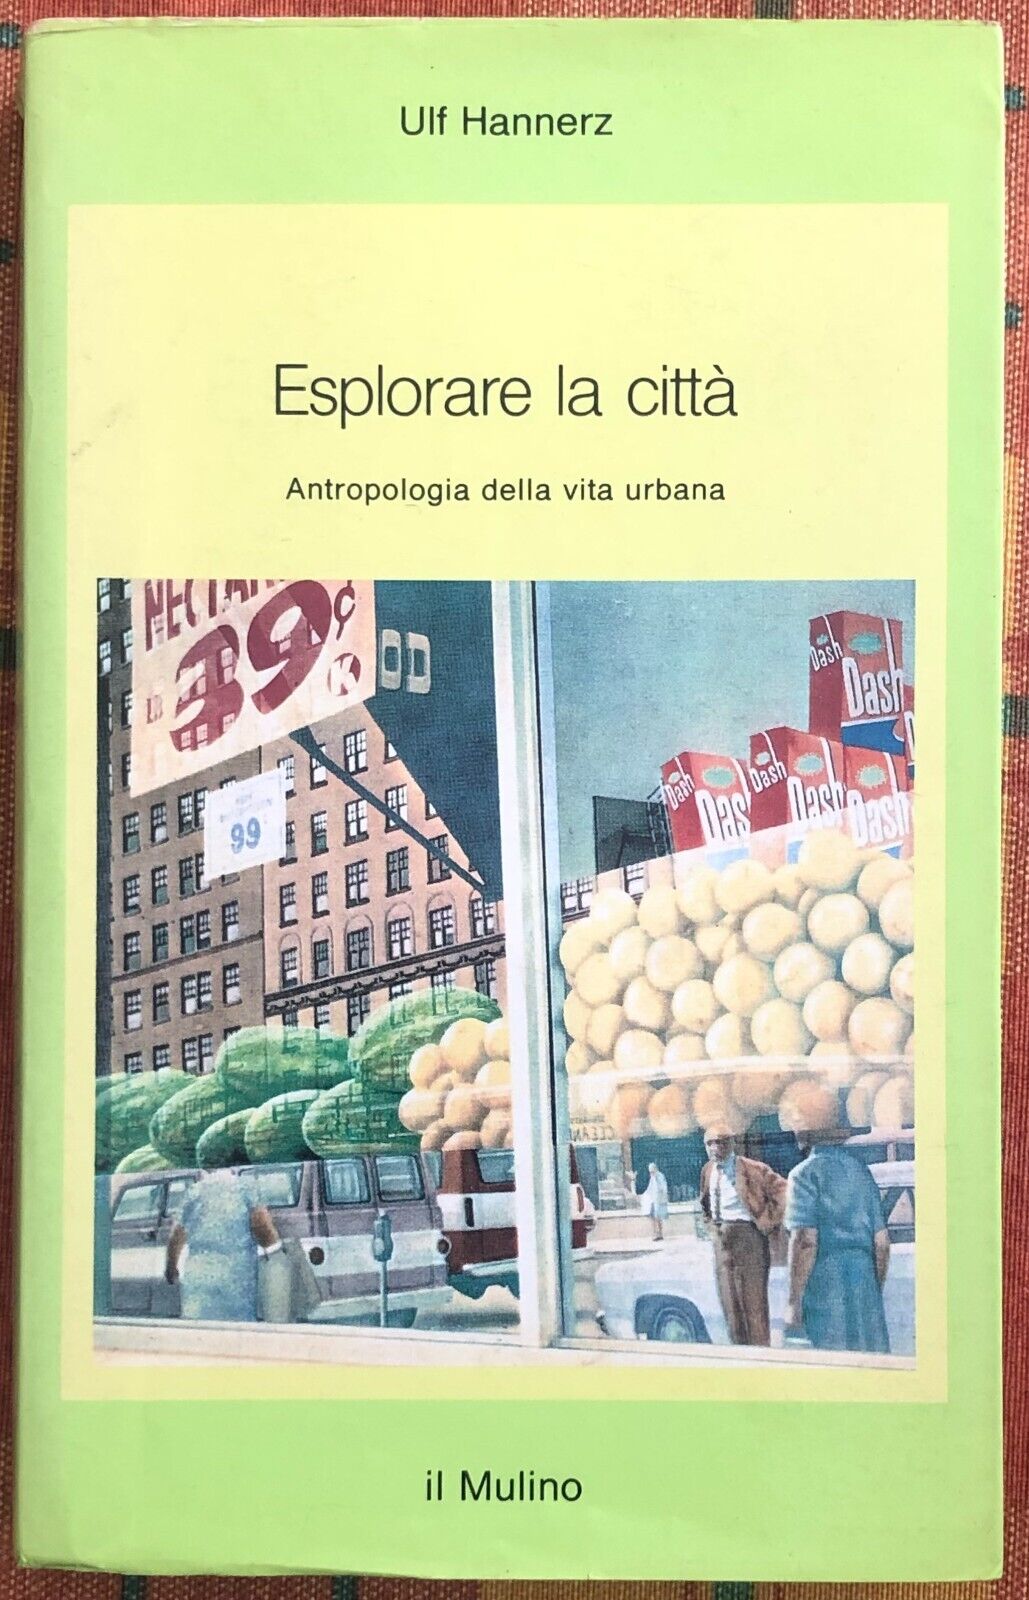 Esplorare la citt?. Antropologia della vita urbana di Ulf Hannerz, 1992, Il M